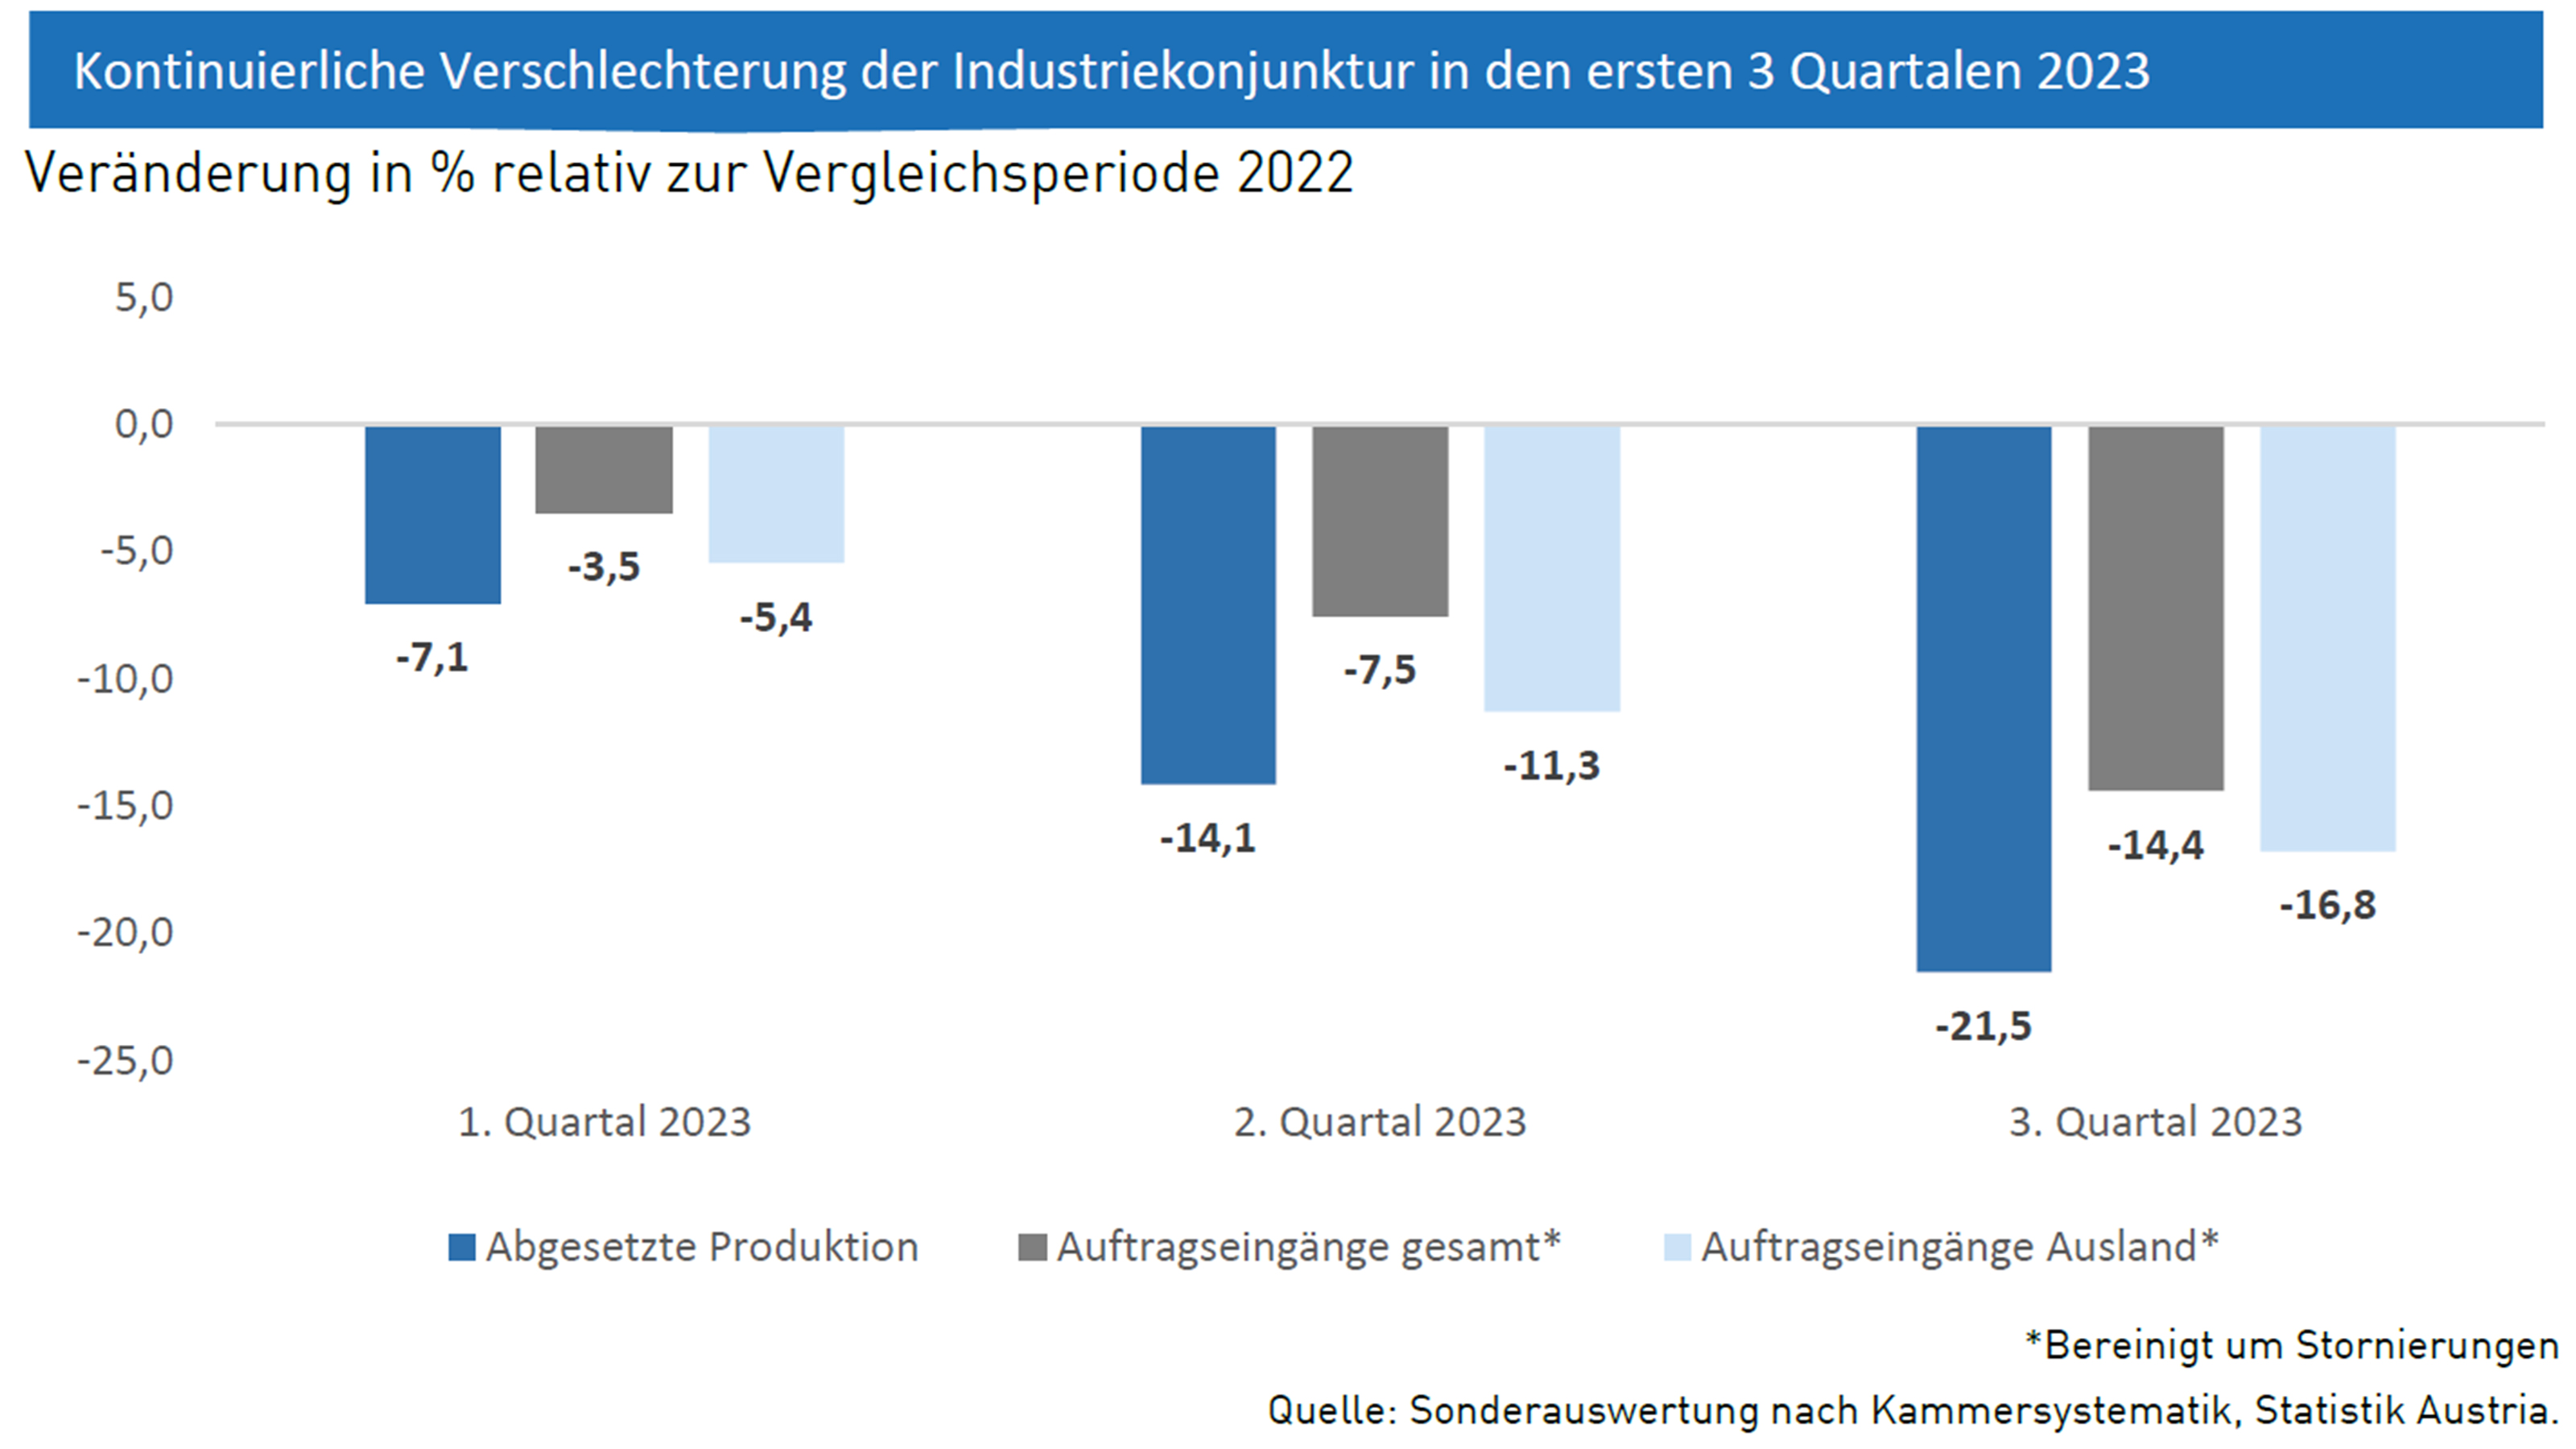 Balkendiagramm zur kontinuierlichen Verschlechterung der Industriekonjunktur in den ersten drei Quartalen 2023 mit vergleichenden Prozentangaben im Vergleich zu 2022